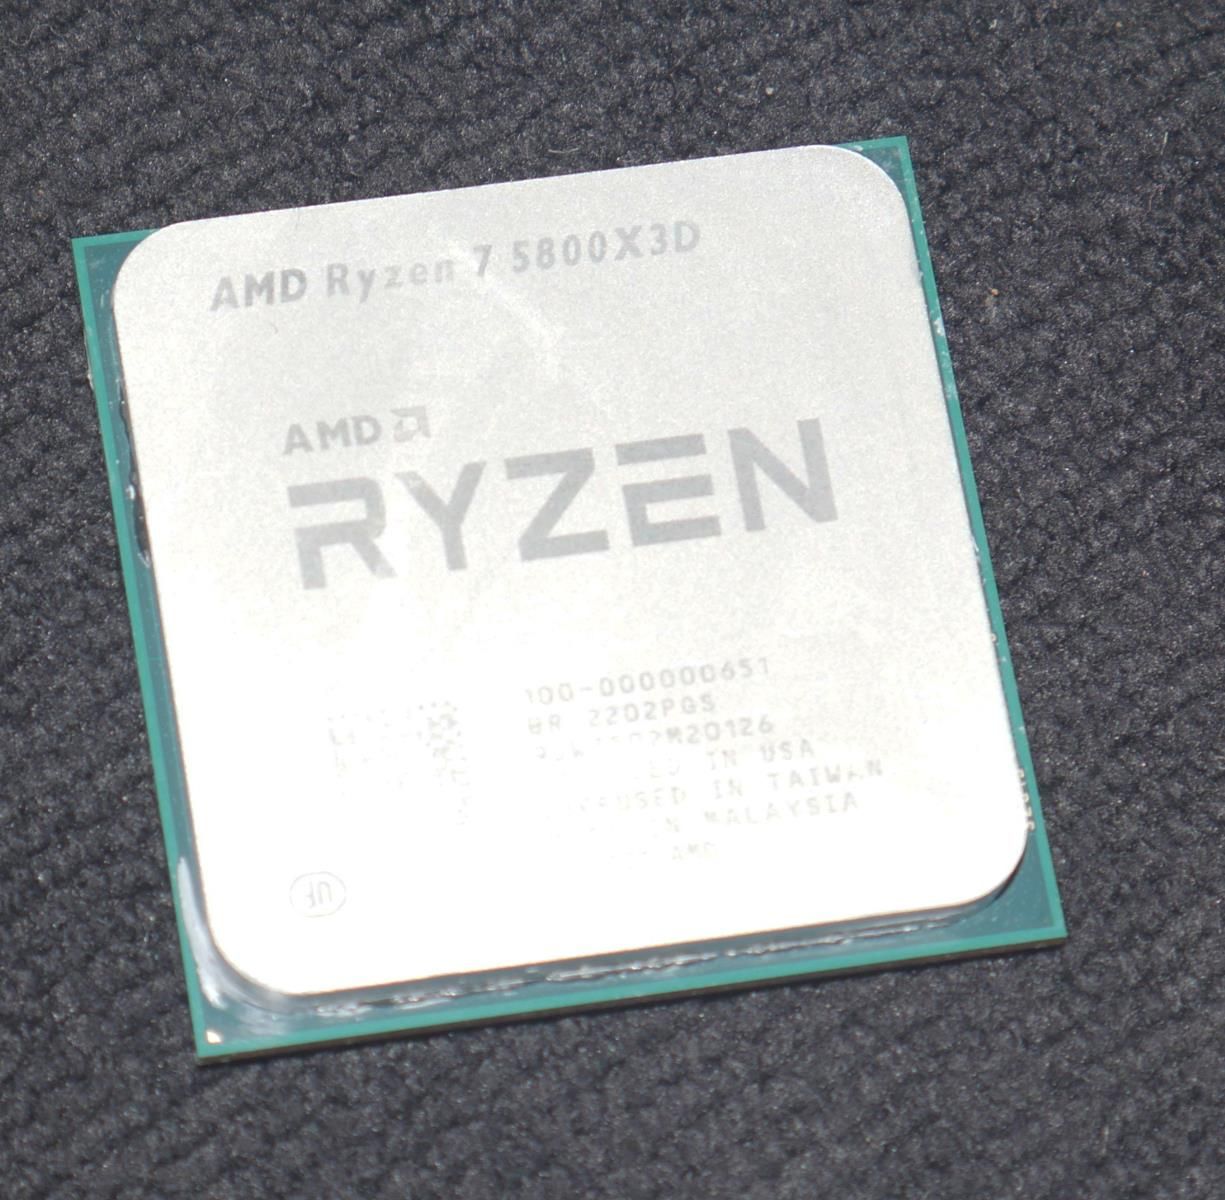 Review AMD Ryzen 7 5800X3D 445